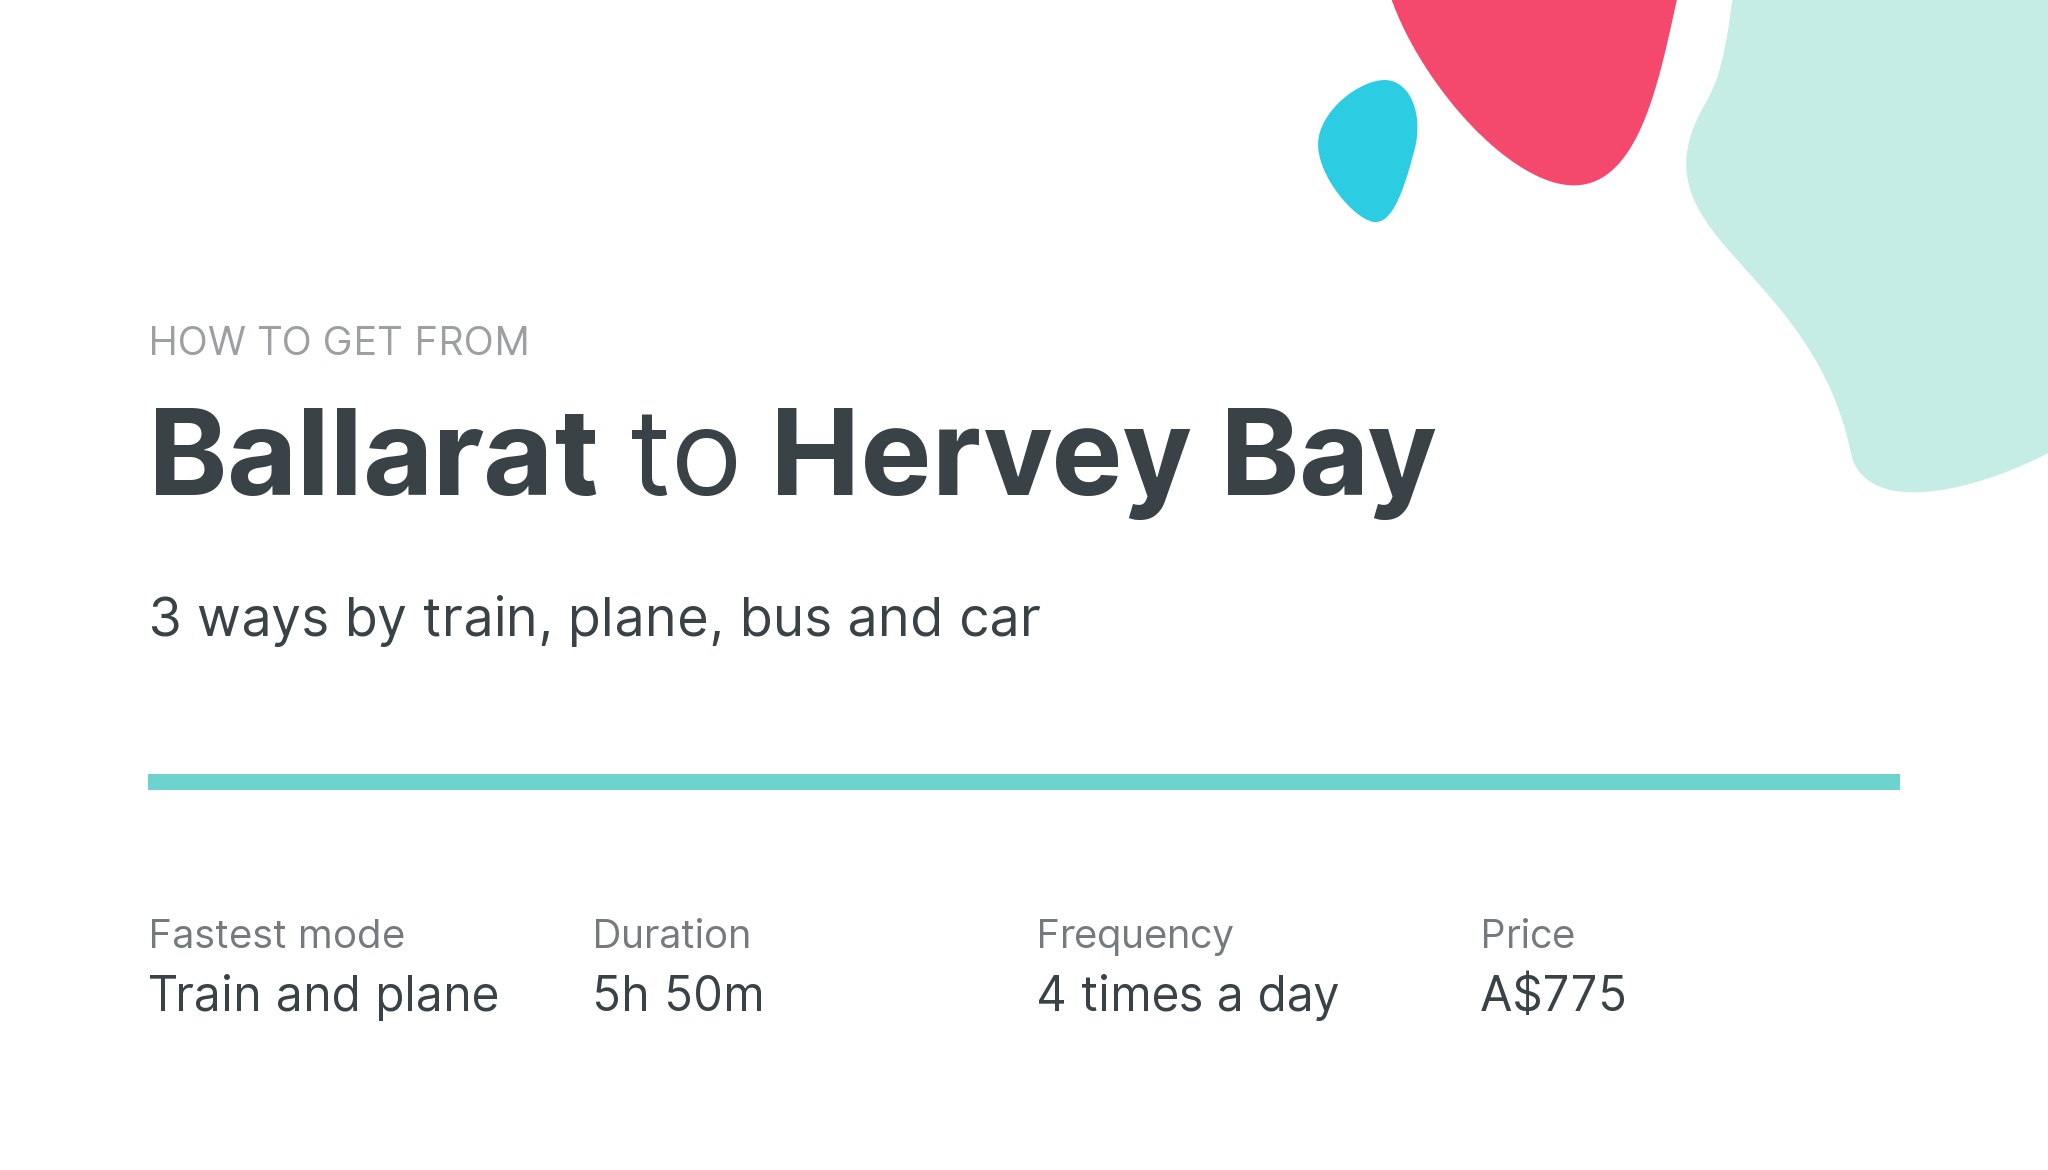 How do I get from Ballarat to Hervey Bay